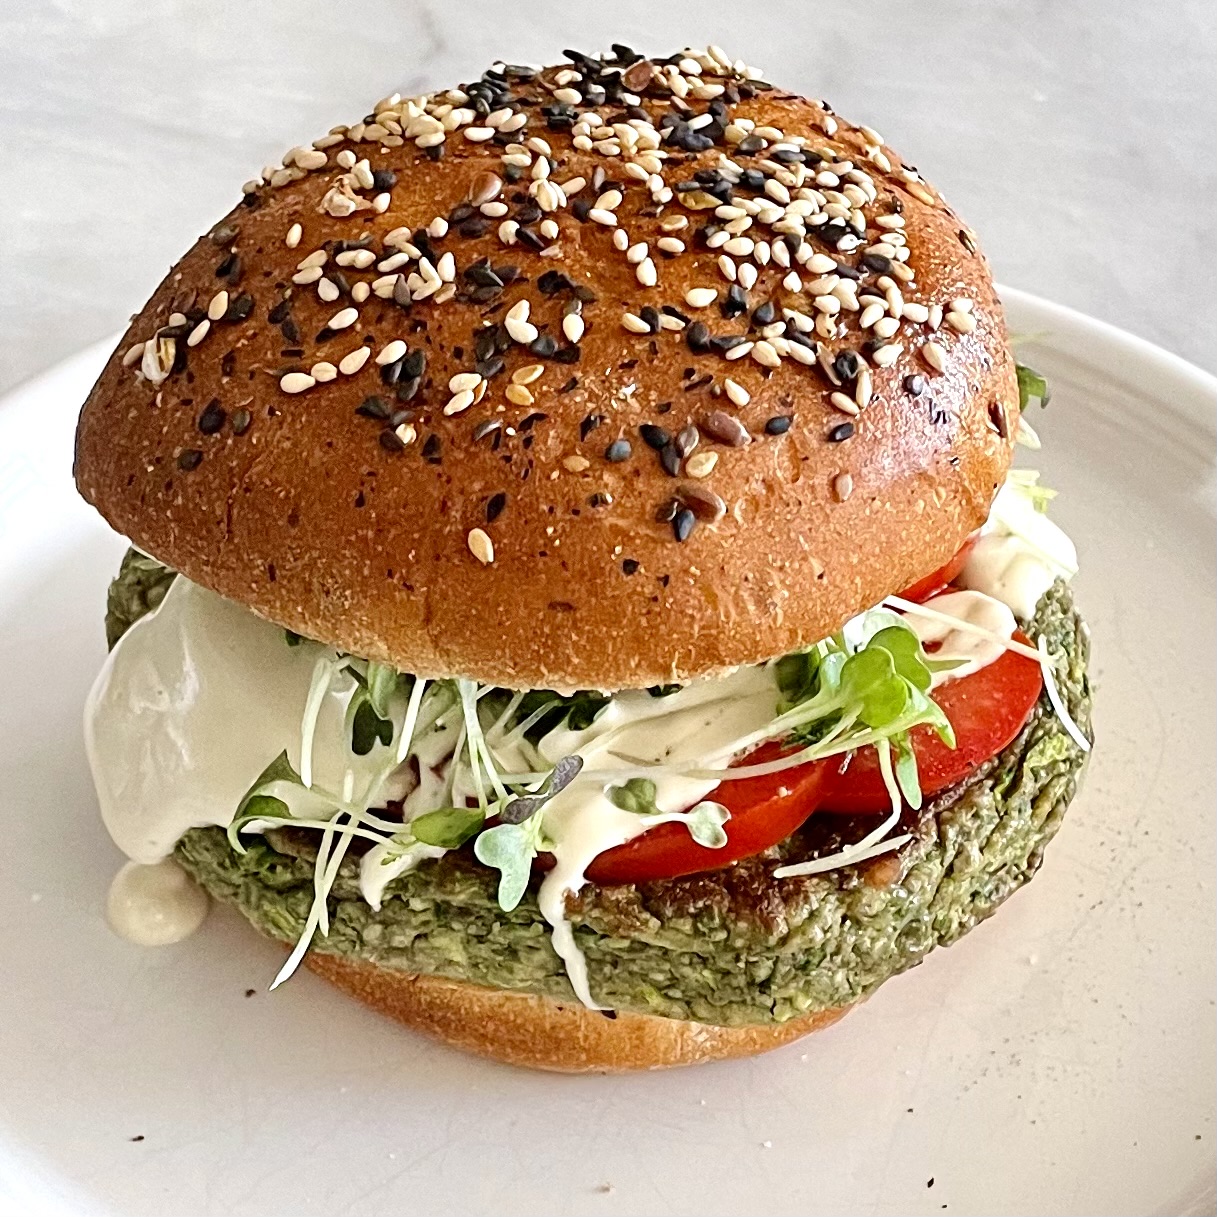 veggie burger with seeded bun